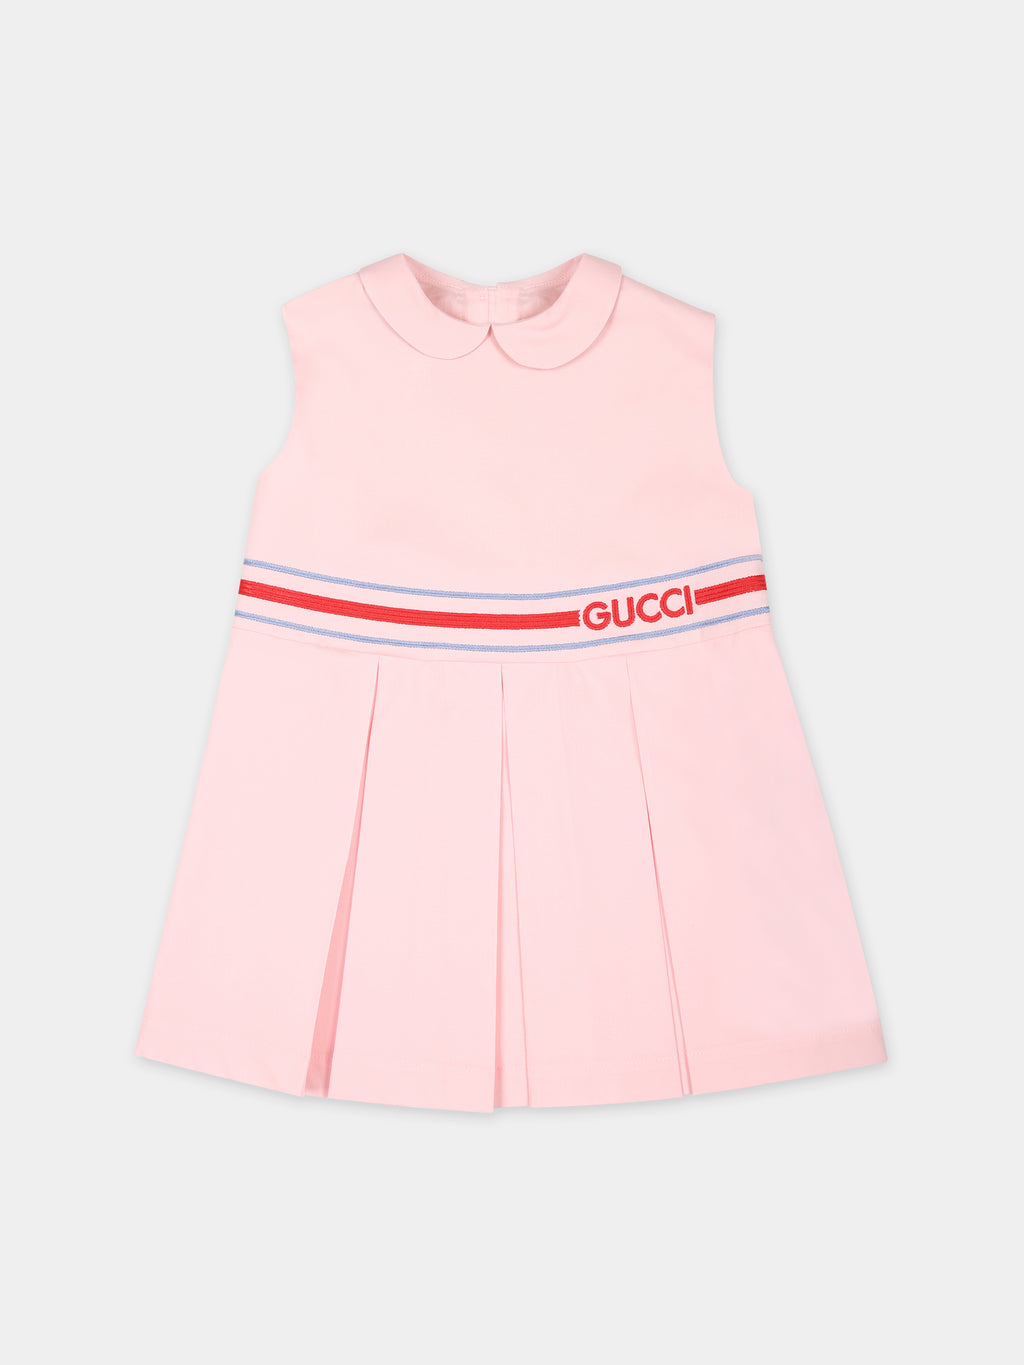 Robe rose pour bébé fille avec motif G Quadro